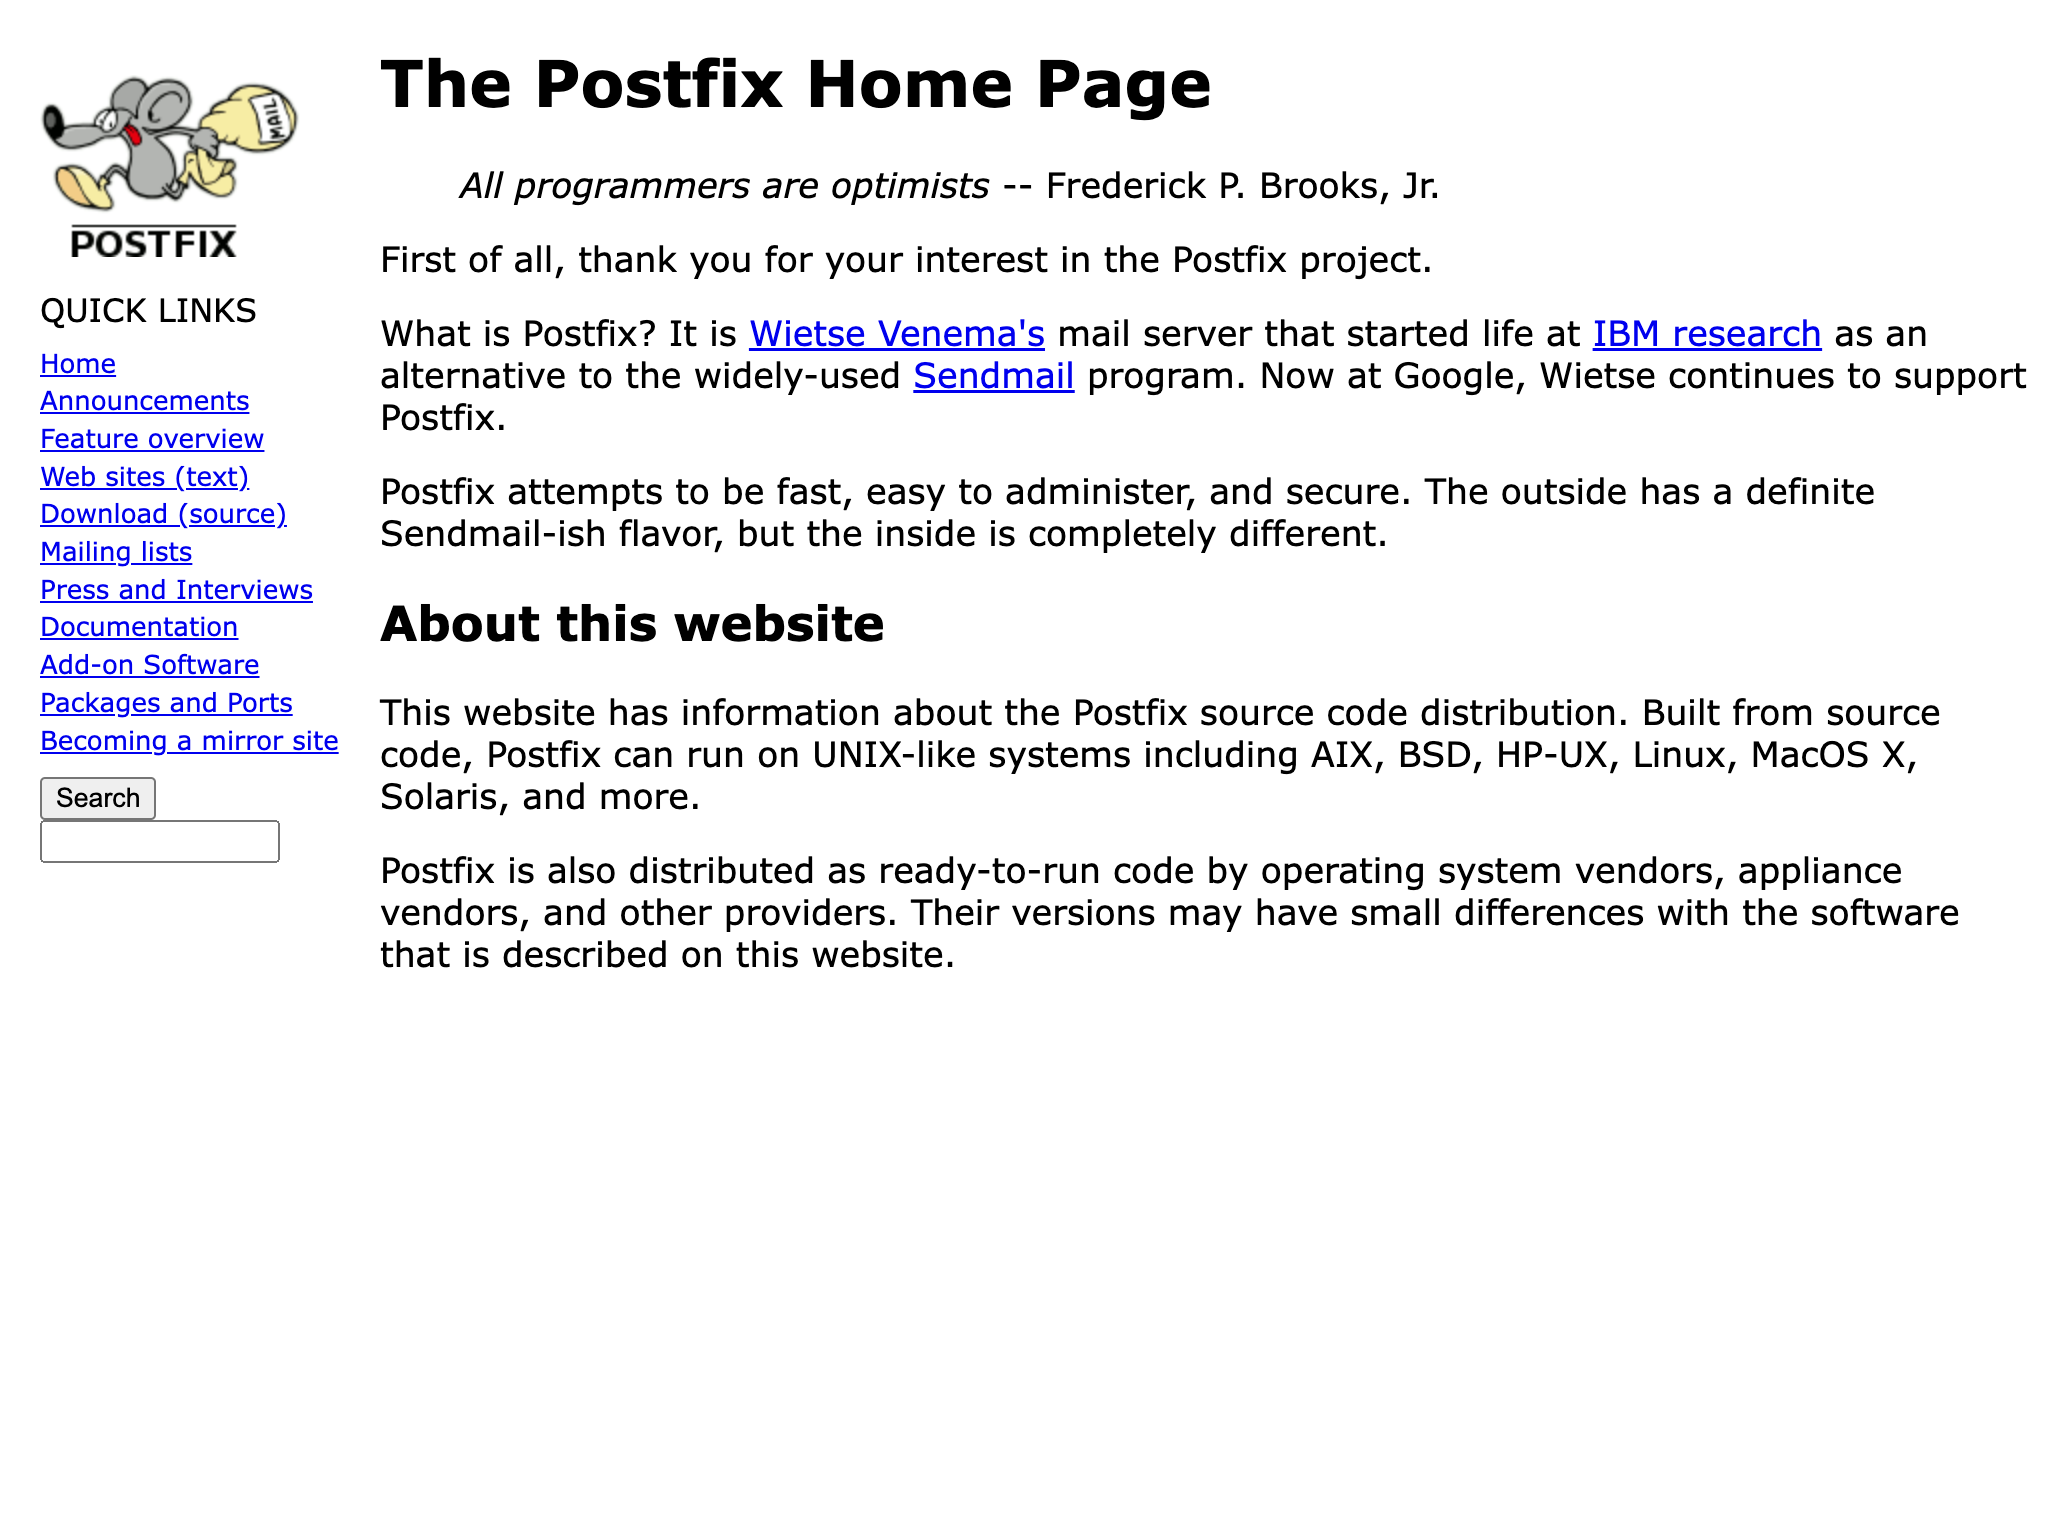 Postfix is een open-source e-mail server voor Slackware Linux .